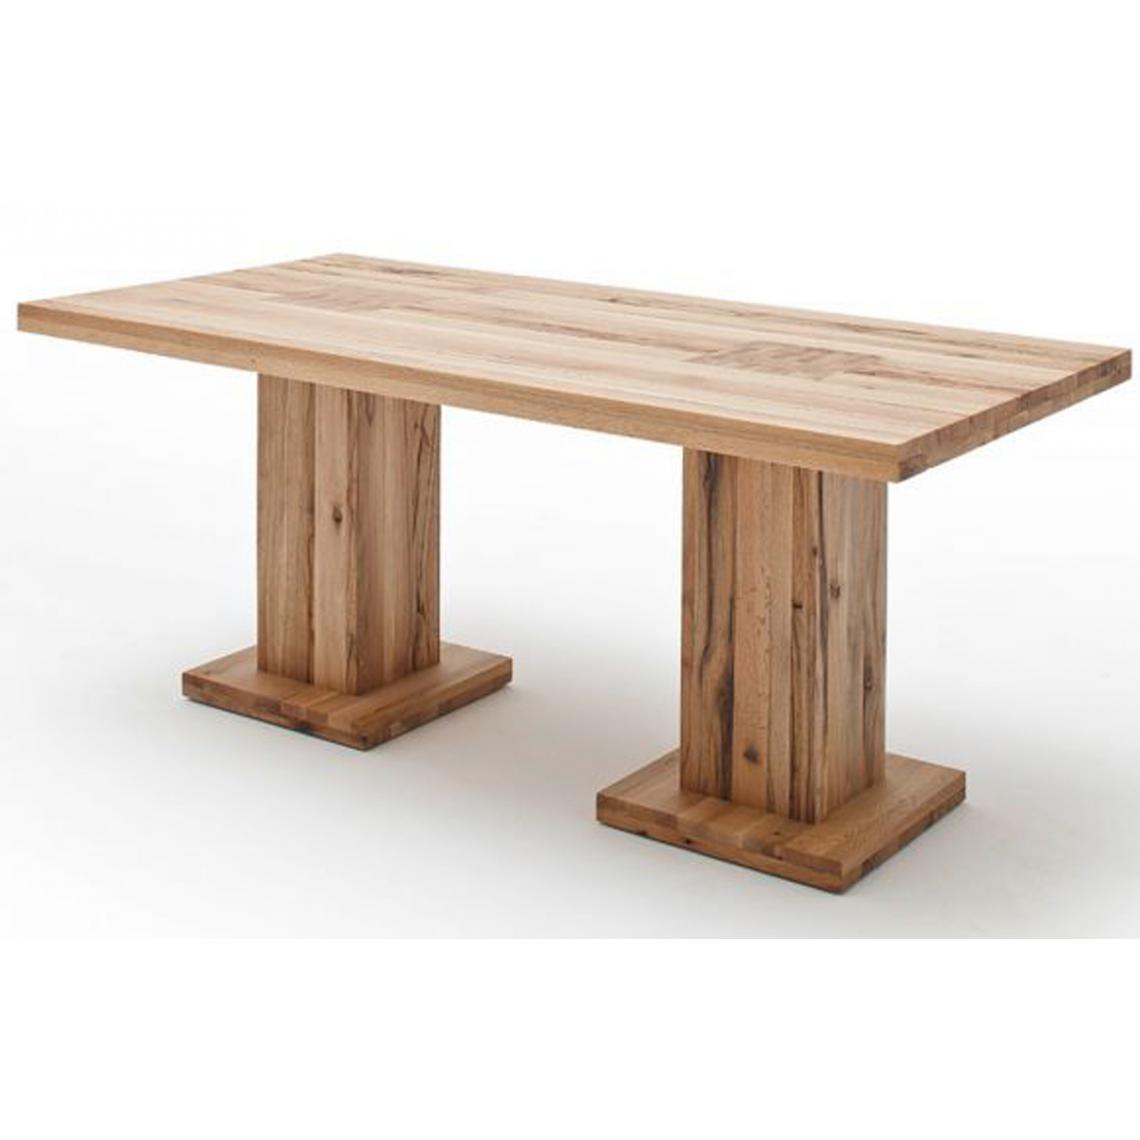 Pegane - Table à manger en chêne sauvage laqué mat, avec 2 colonnes - L.220 x H.76 x P.100 cm -PEGANE- - Tables à manger